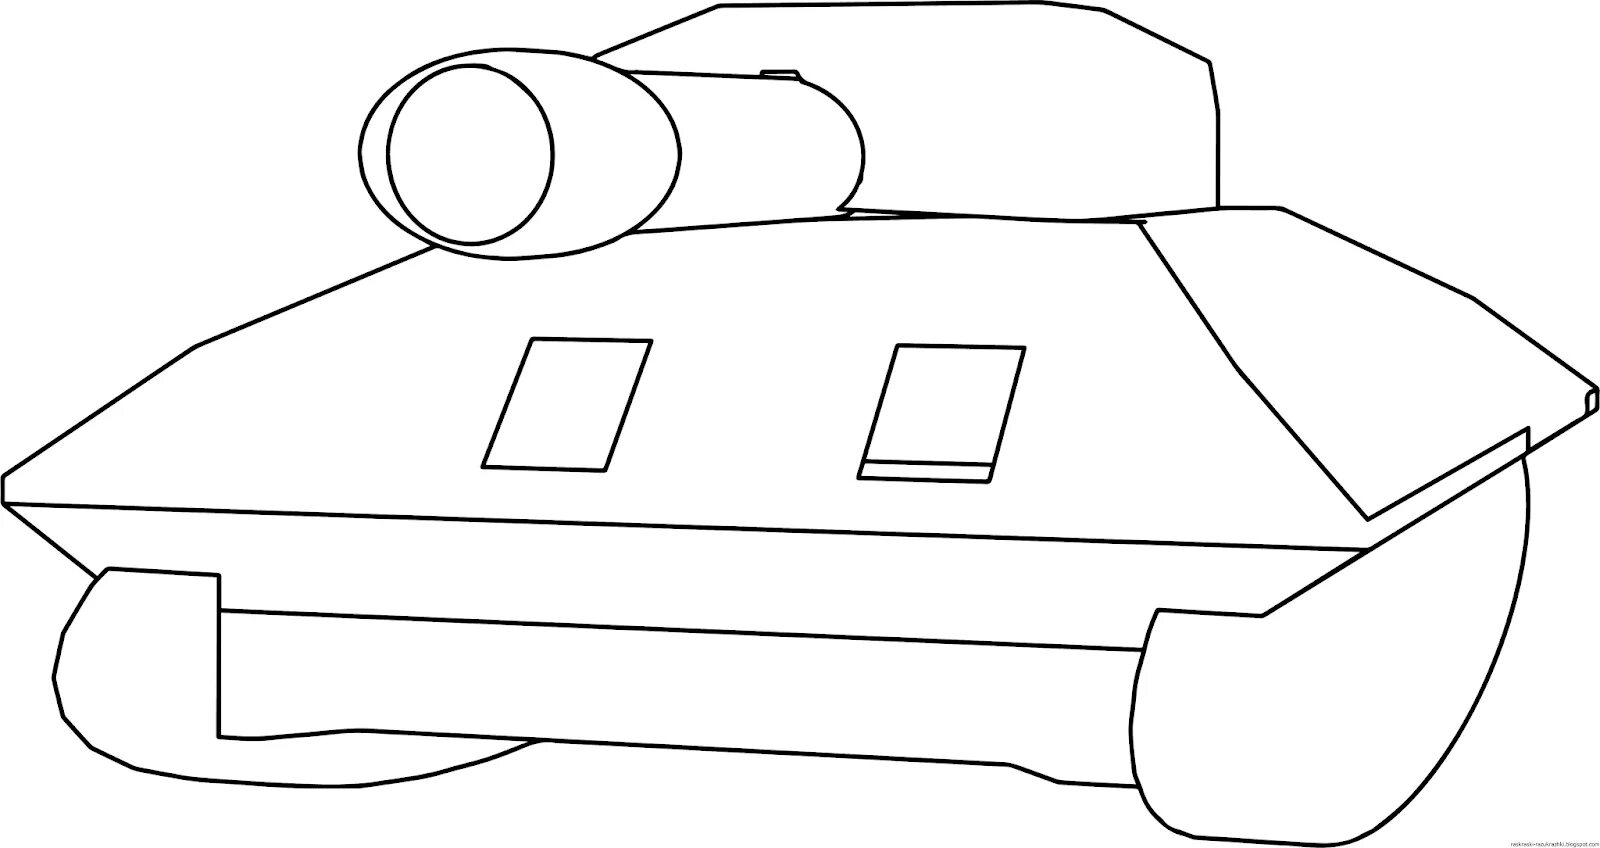 Шаблоны легких танков. Танк спереди контур. Танк т-34 раскраска для детей. Раскраска танки для детей. Картинка танка для детей раскраски.